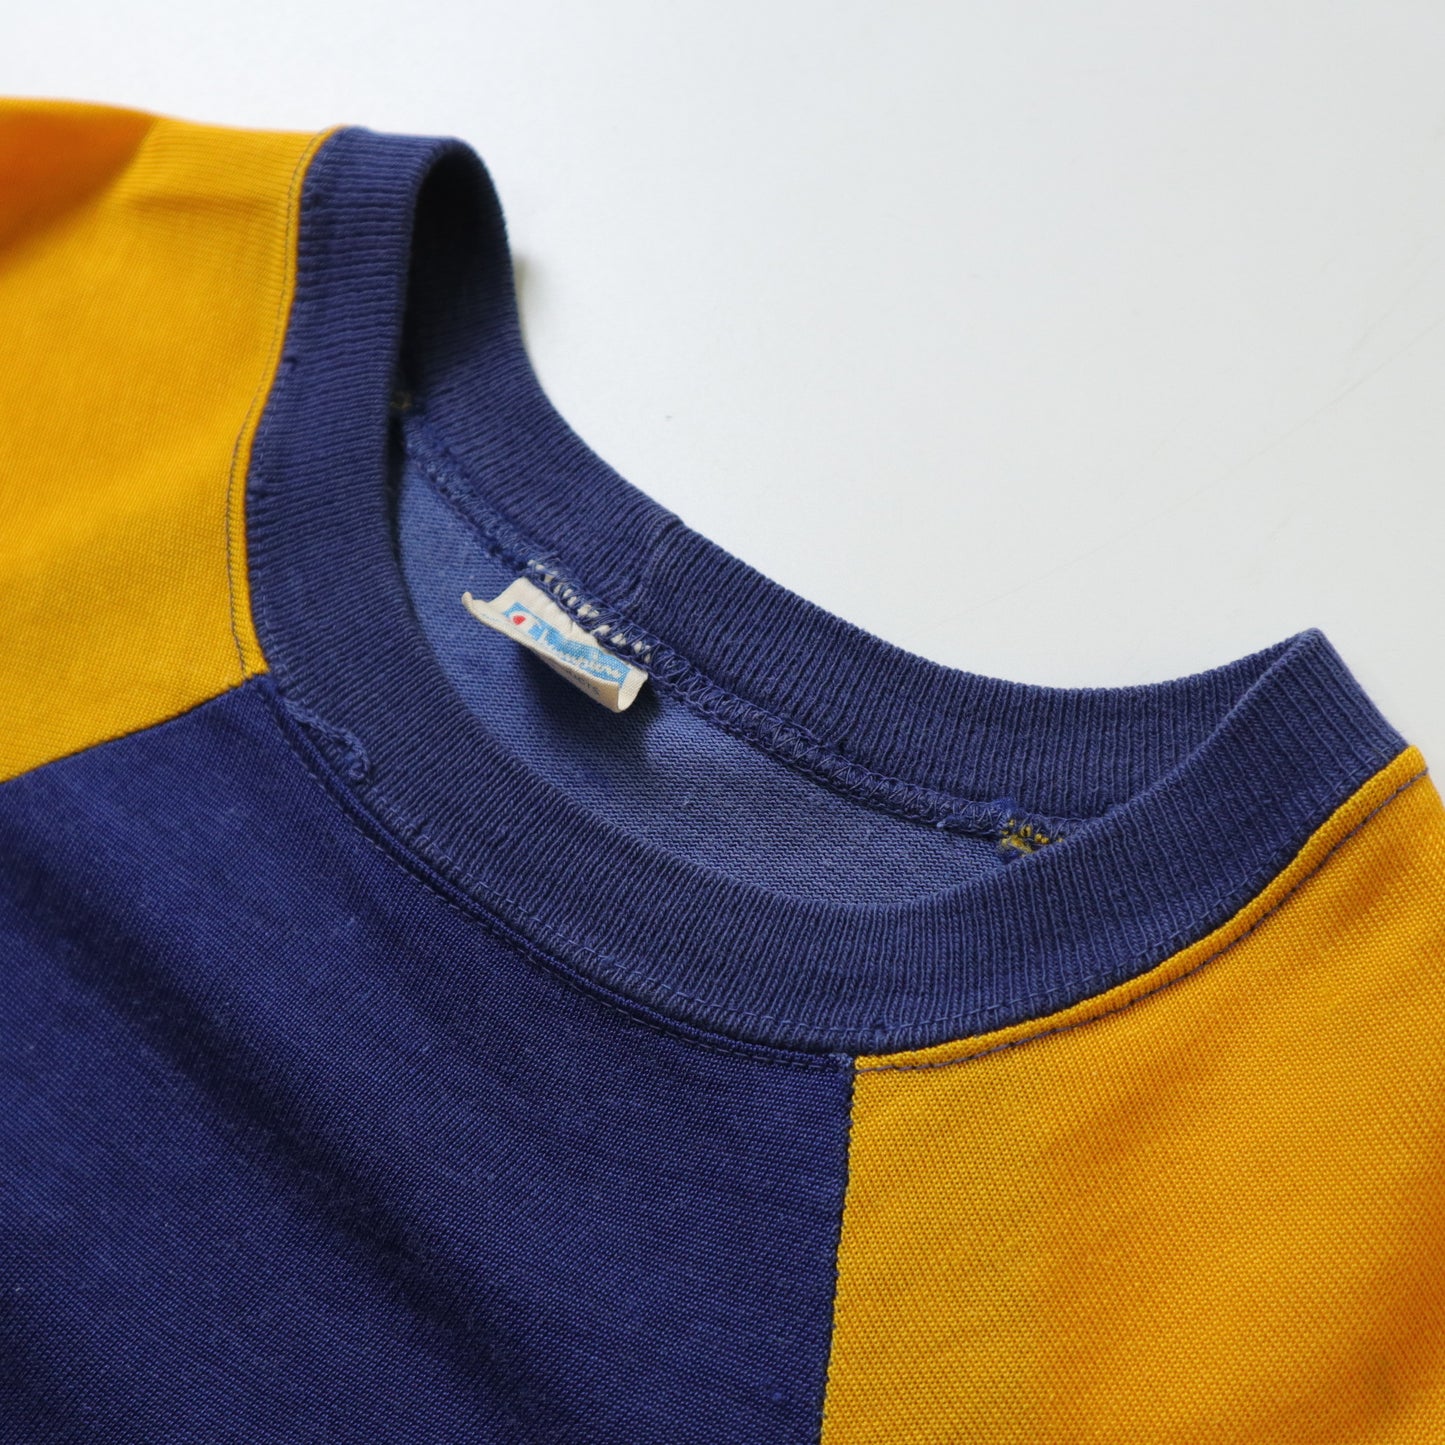 70s Champion 美國製 JESUIT 藍黃拼接美式足球上衣